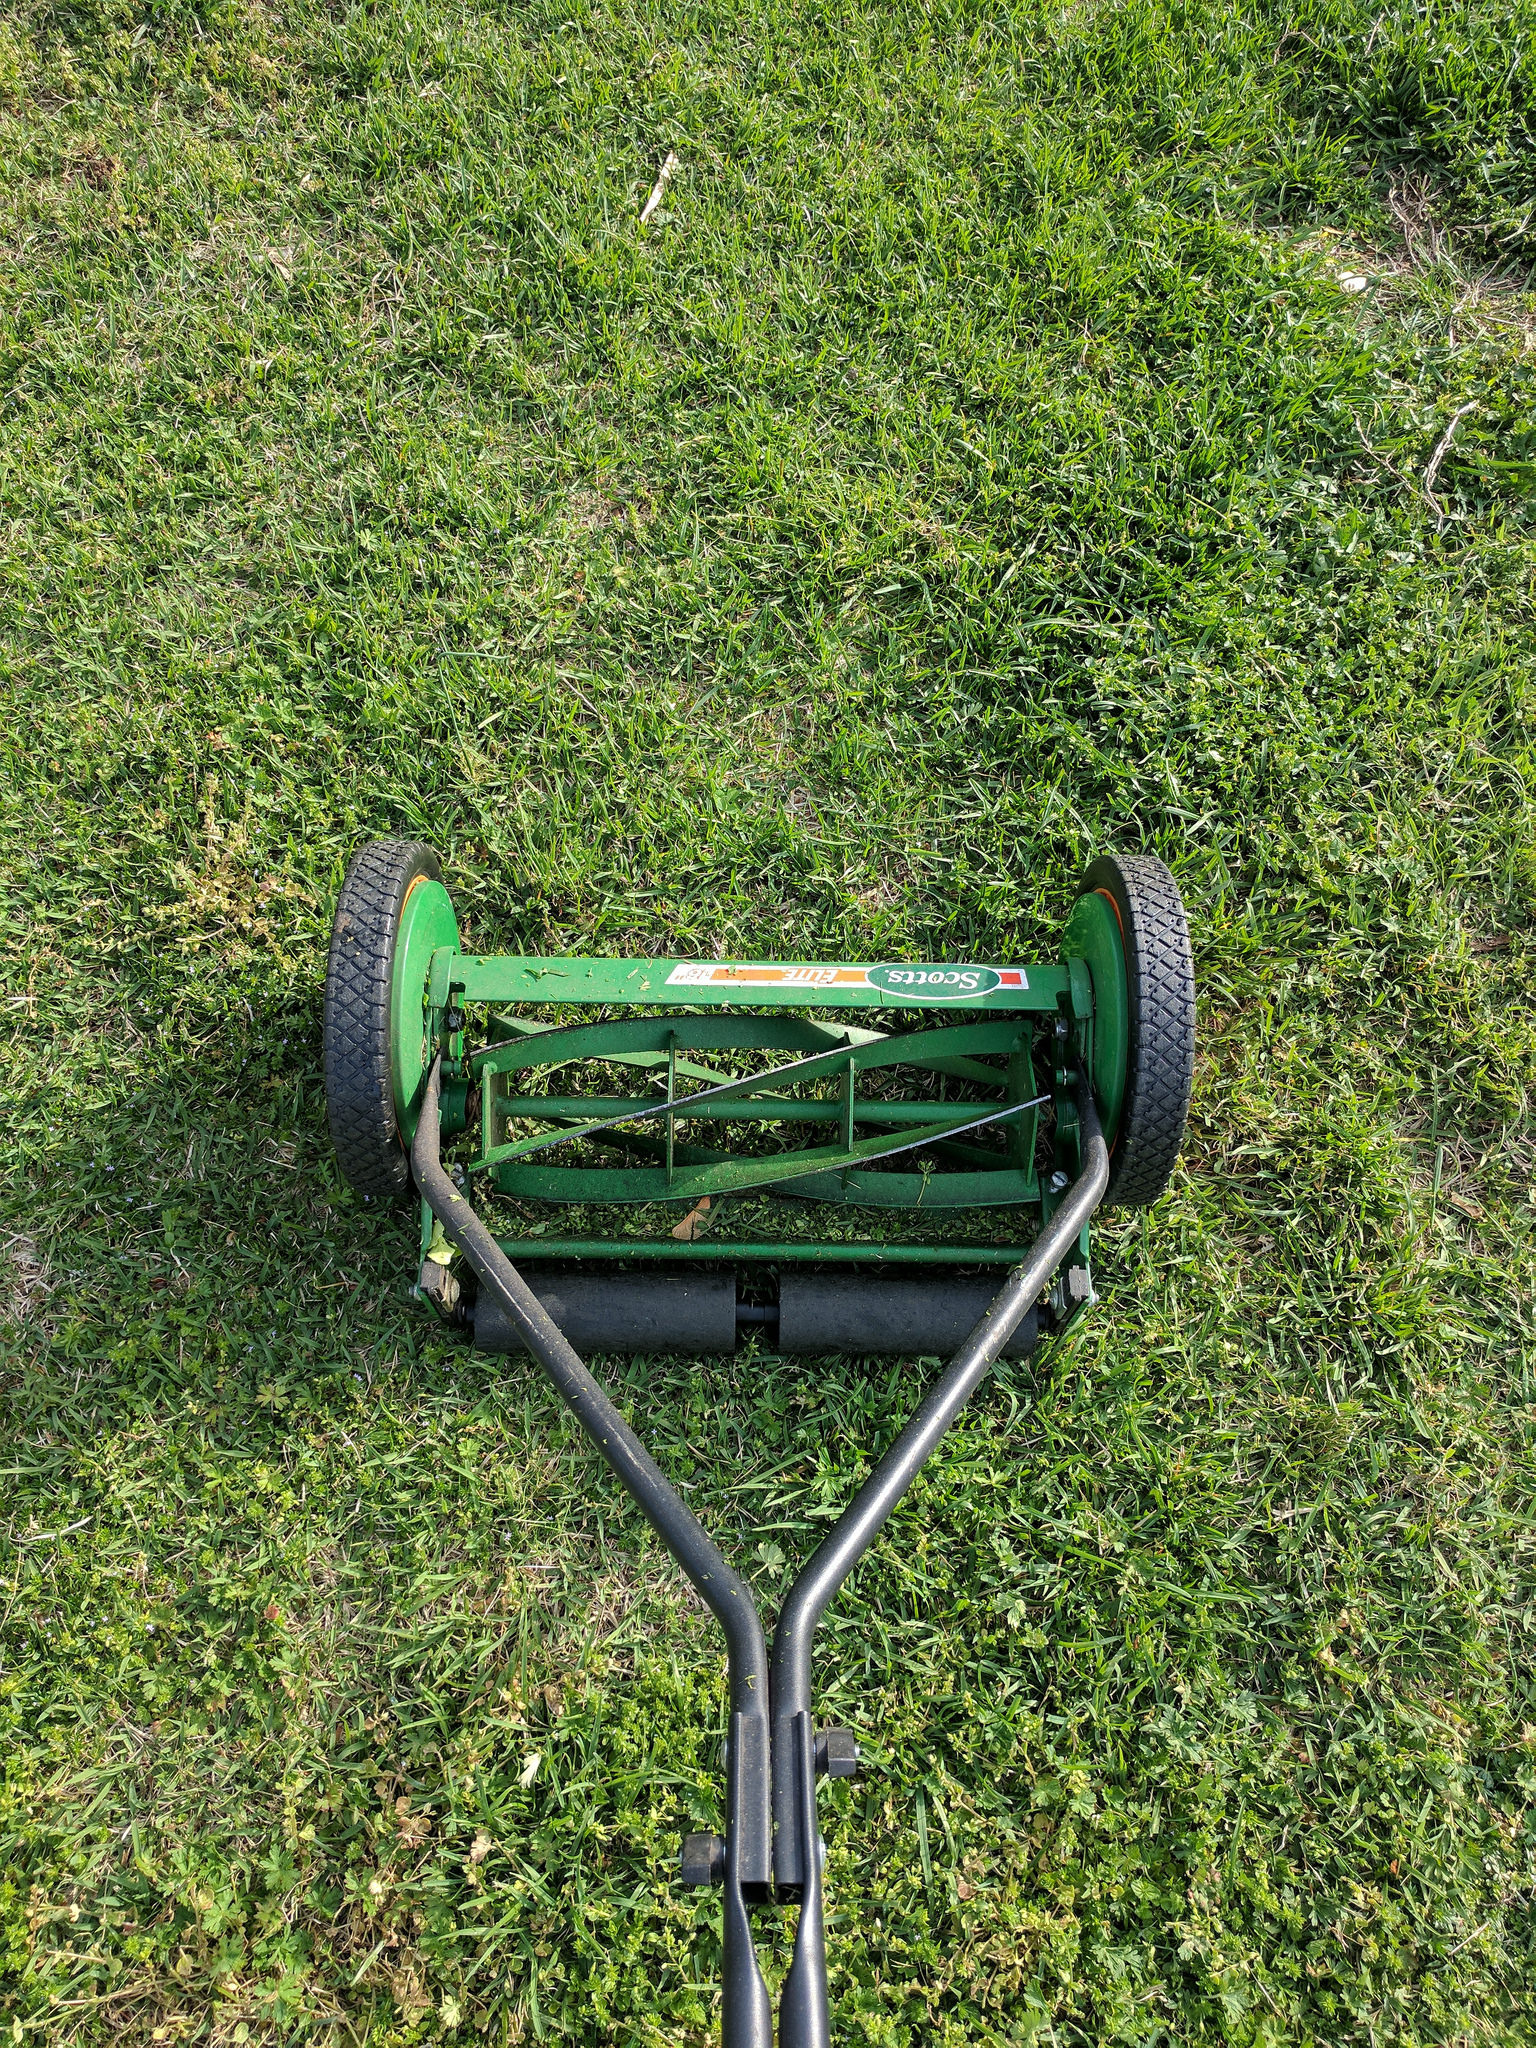 A reel lawn mower